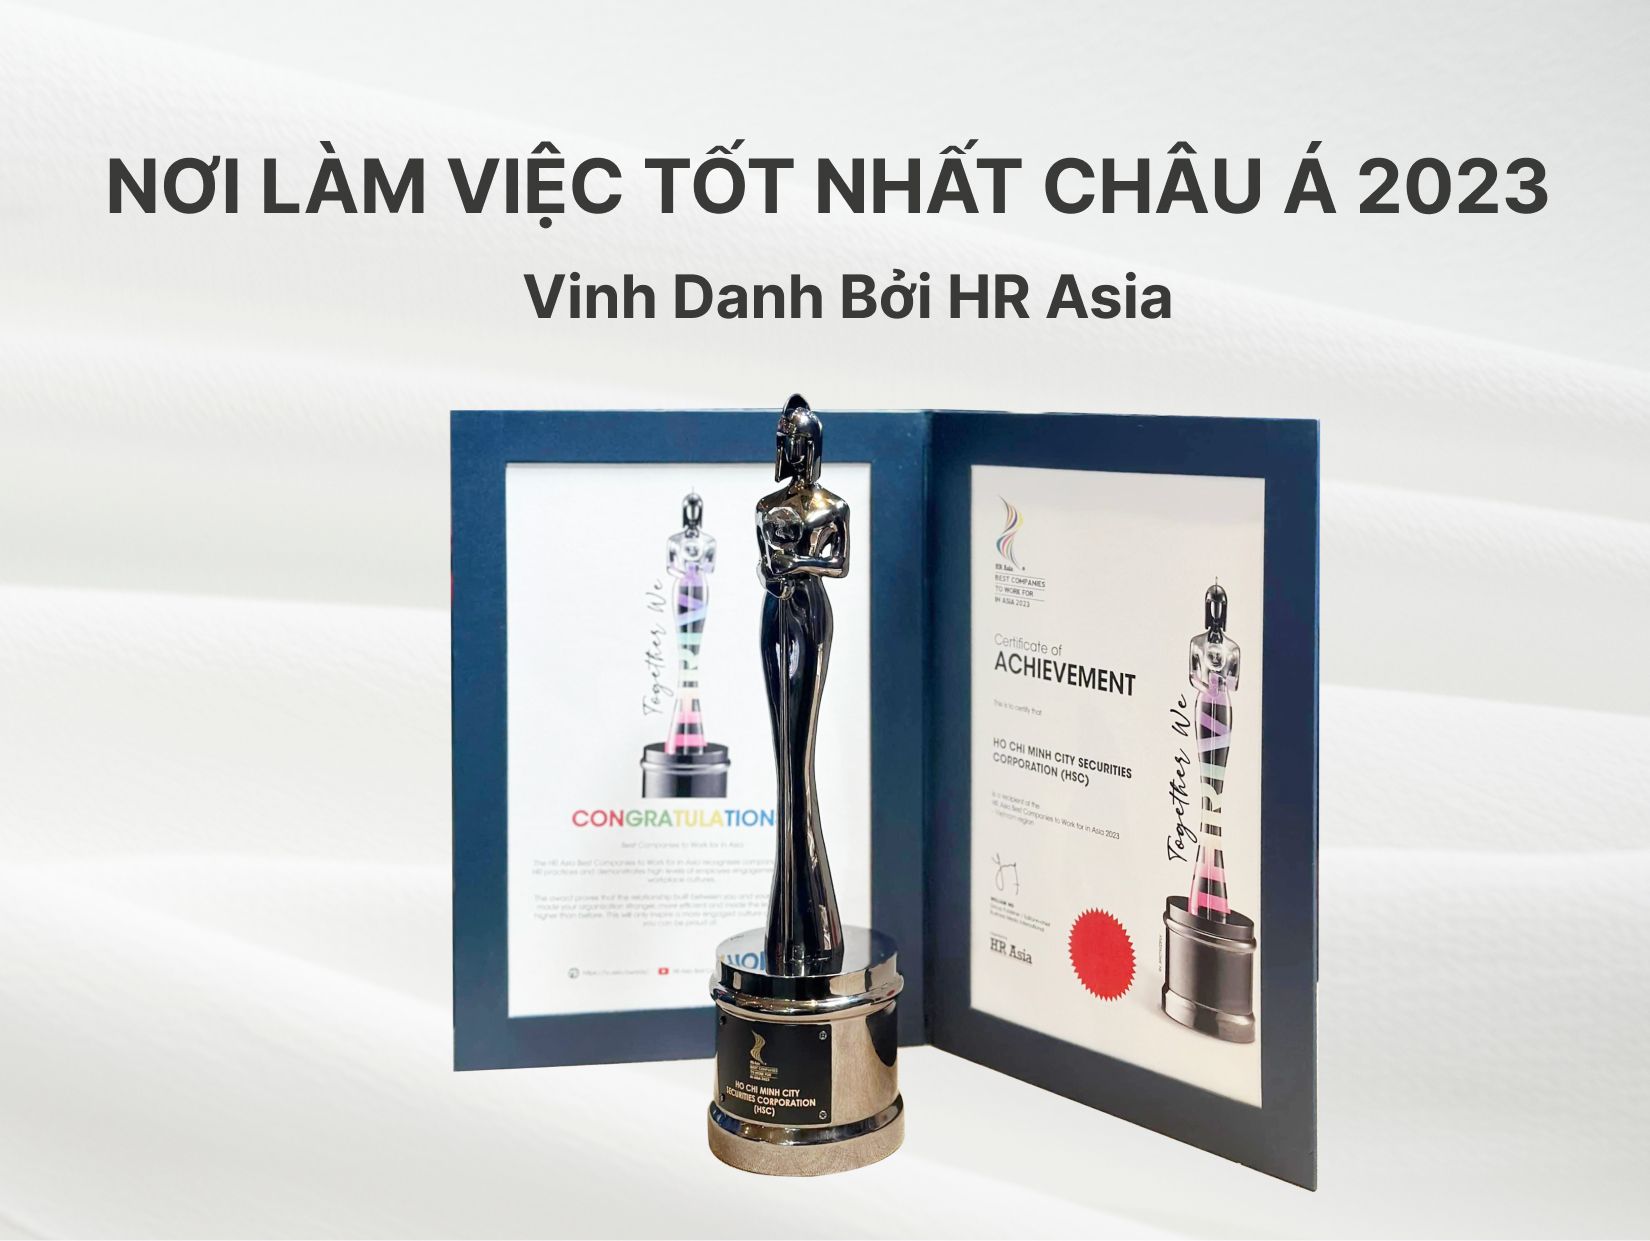 HSC - “Nơi làm việc tốt nhất châu Á 2023” – Vinh danh bởi HR Asia